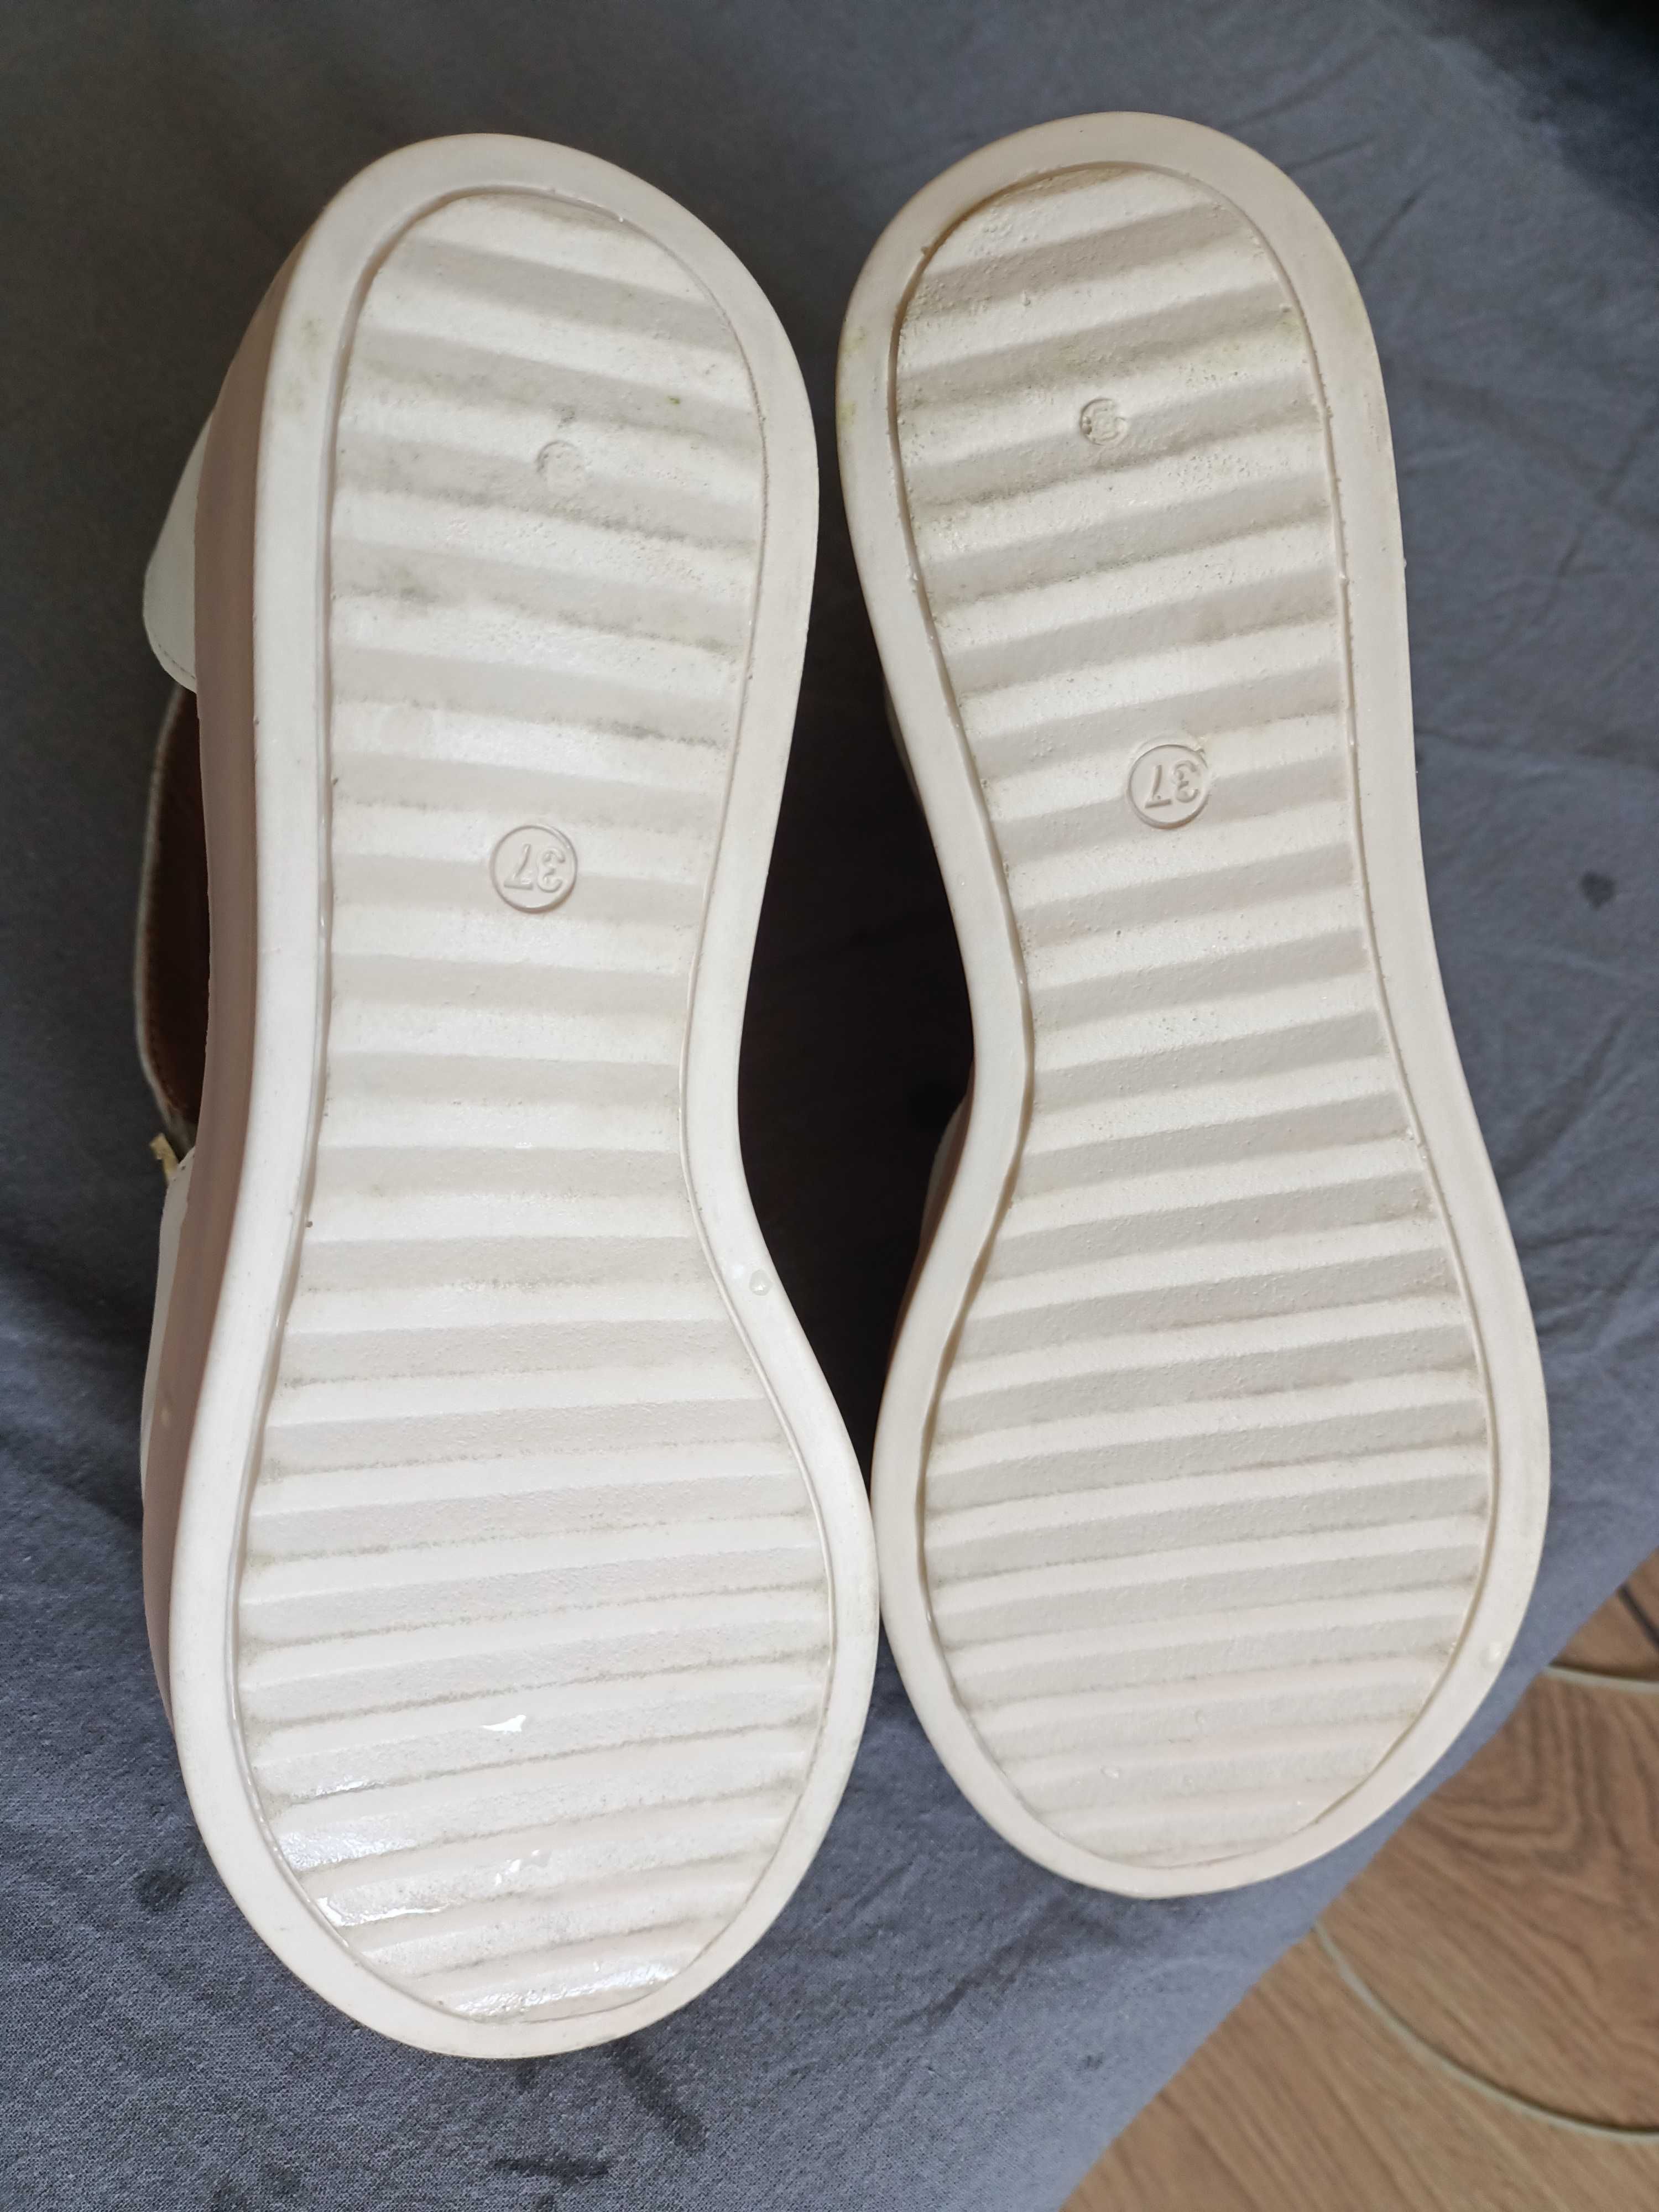 Sandale albe piele, marimea 37, cu platforma 7 cm